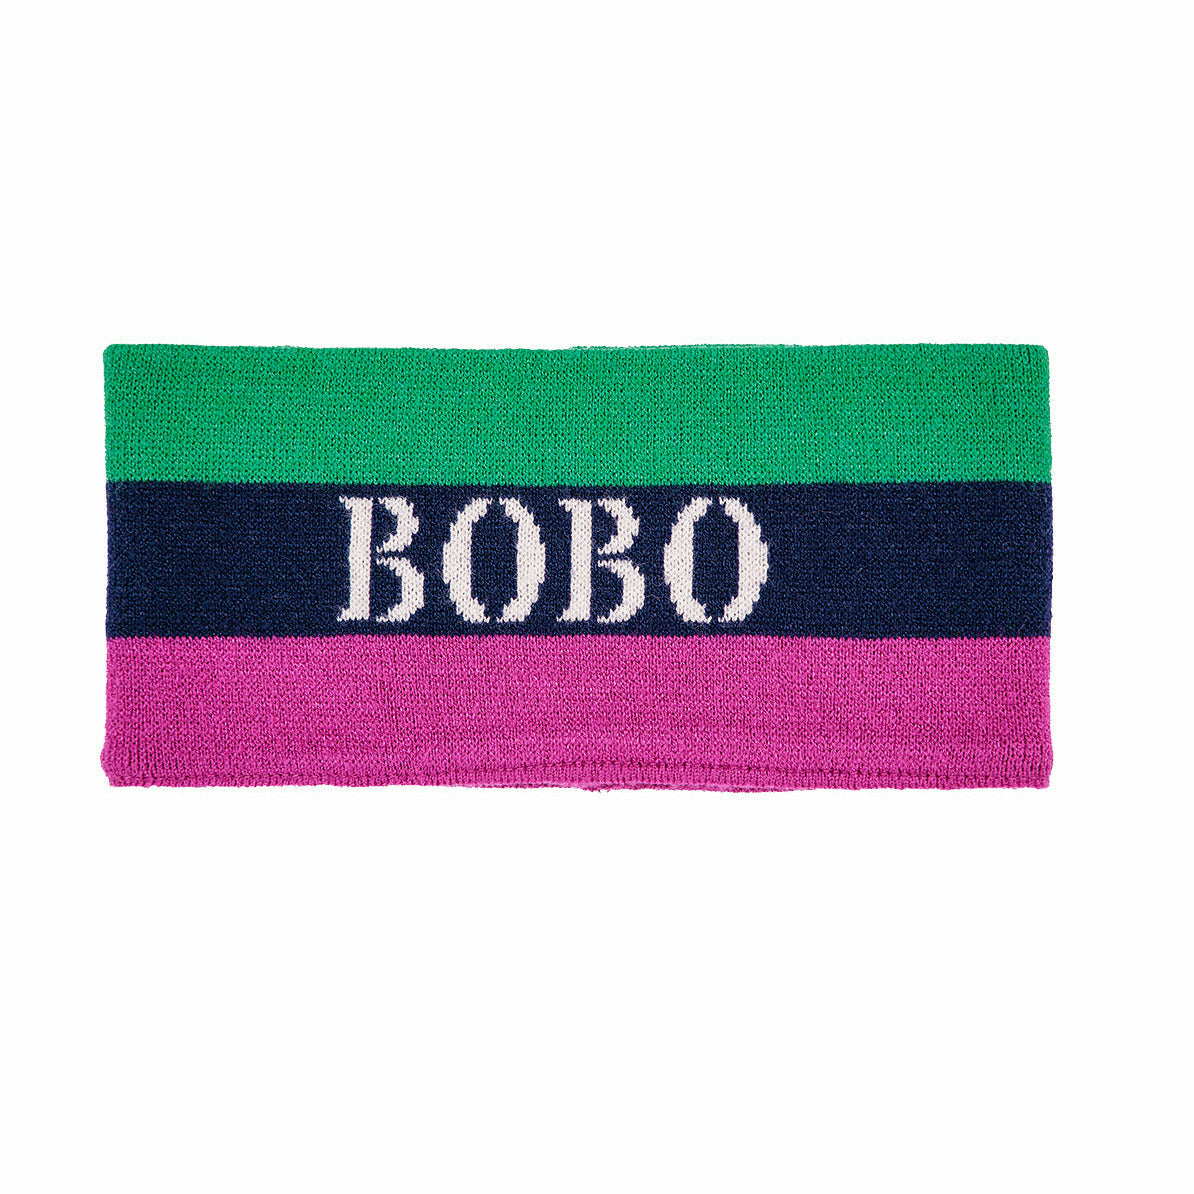 Bobo Stripes Headband